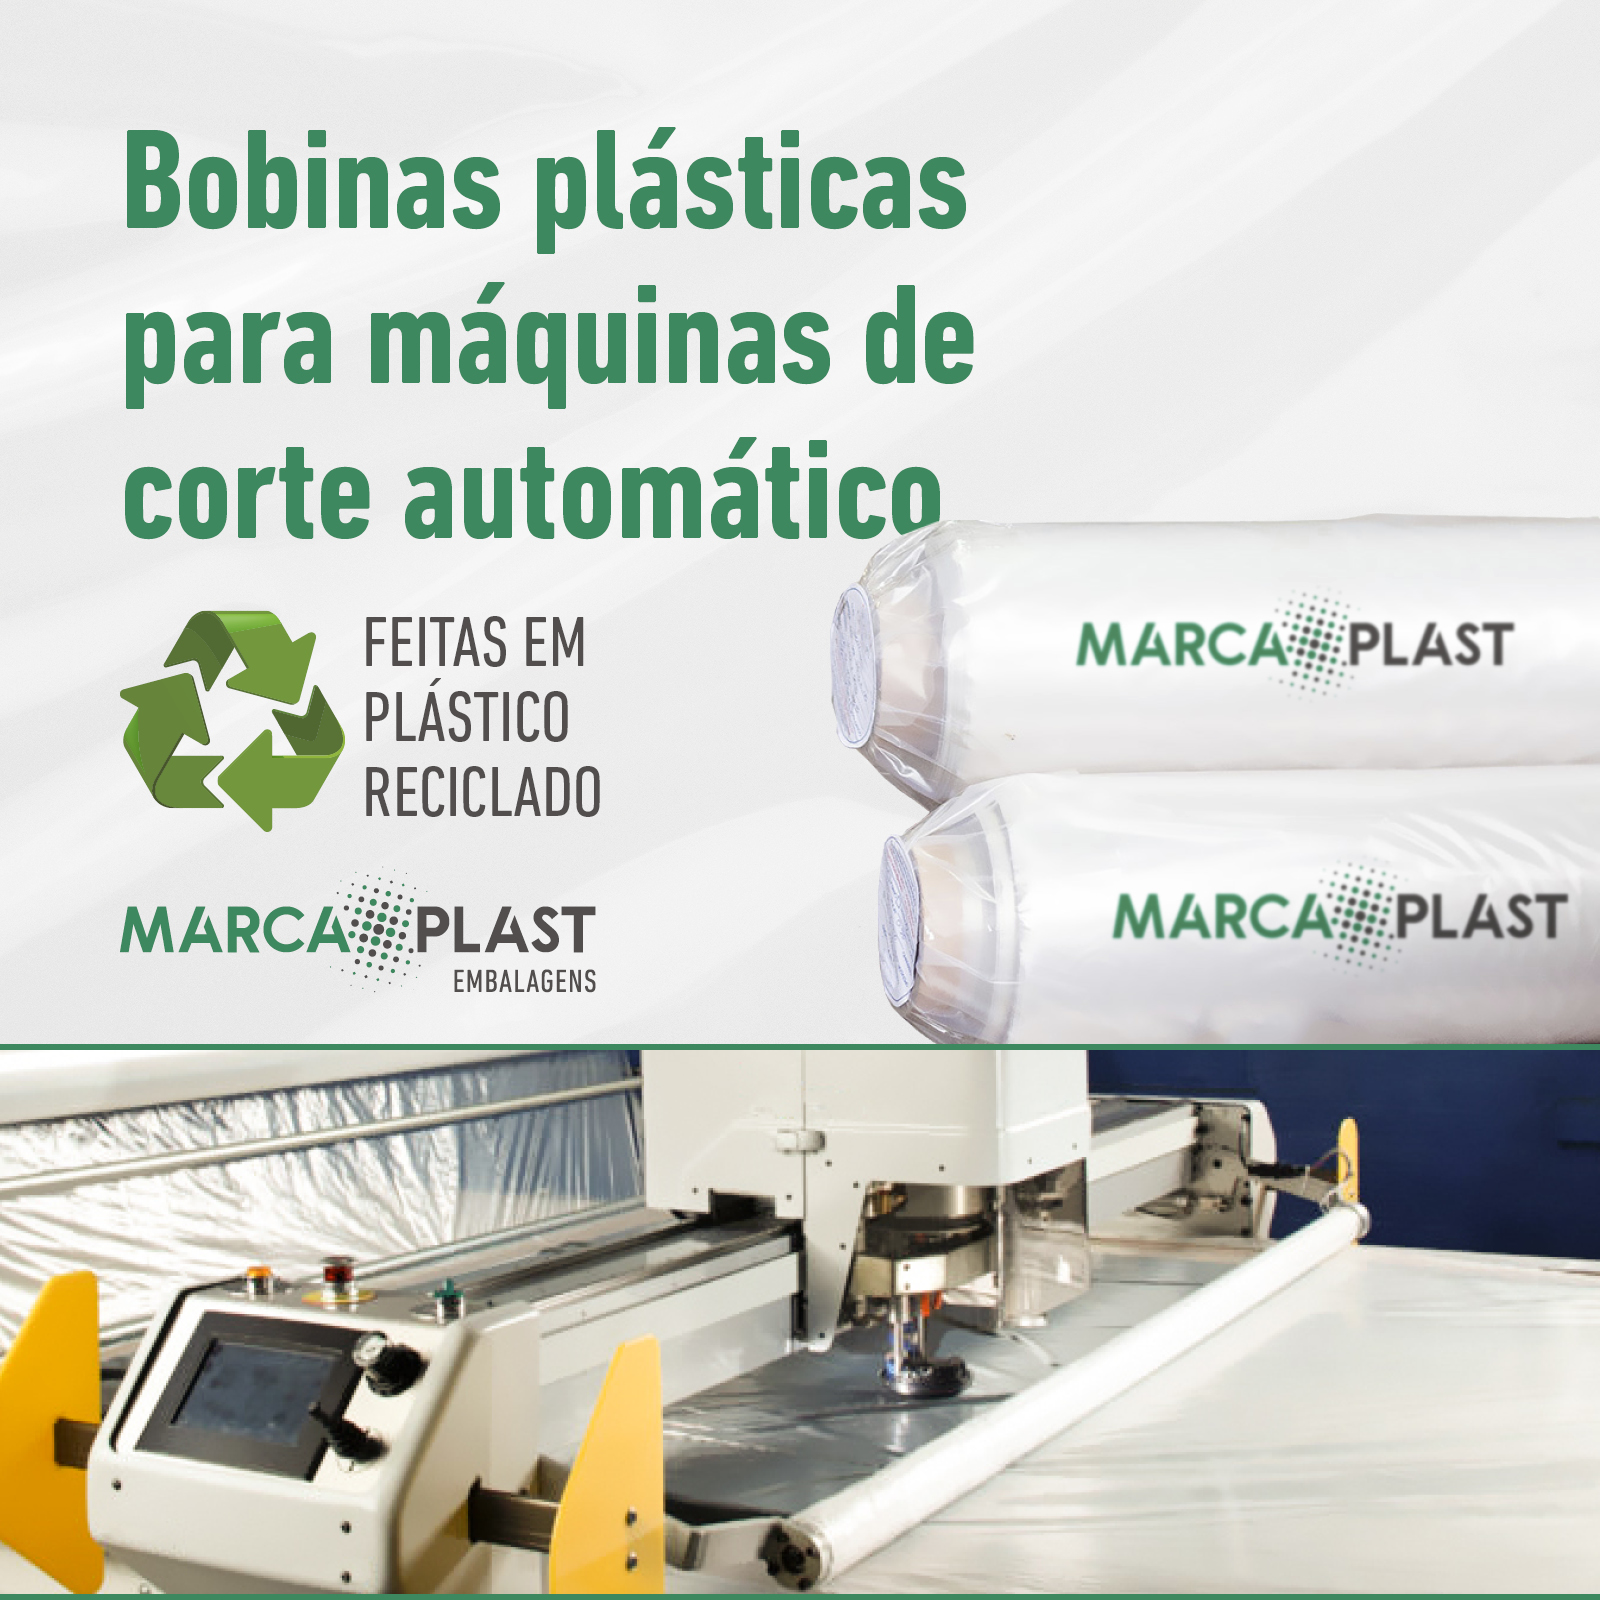 Bobinas plásticas para máquinas de corte automatizadas